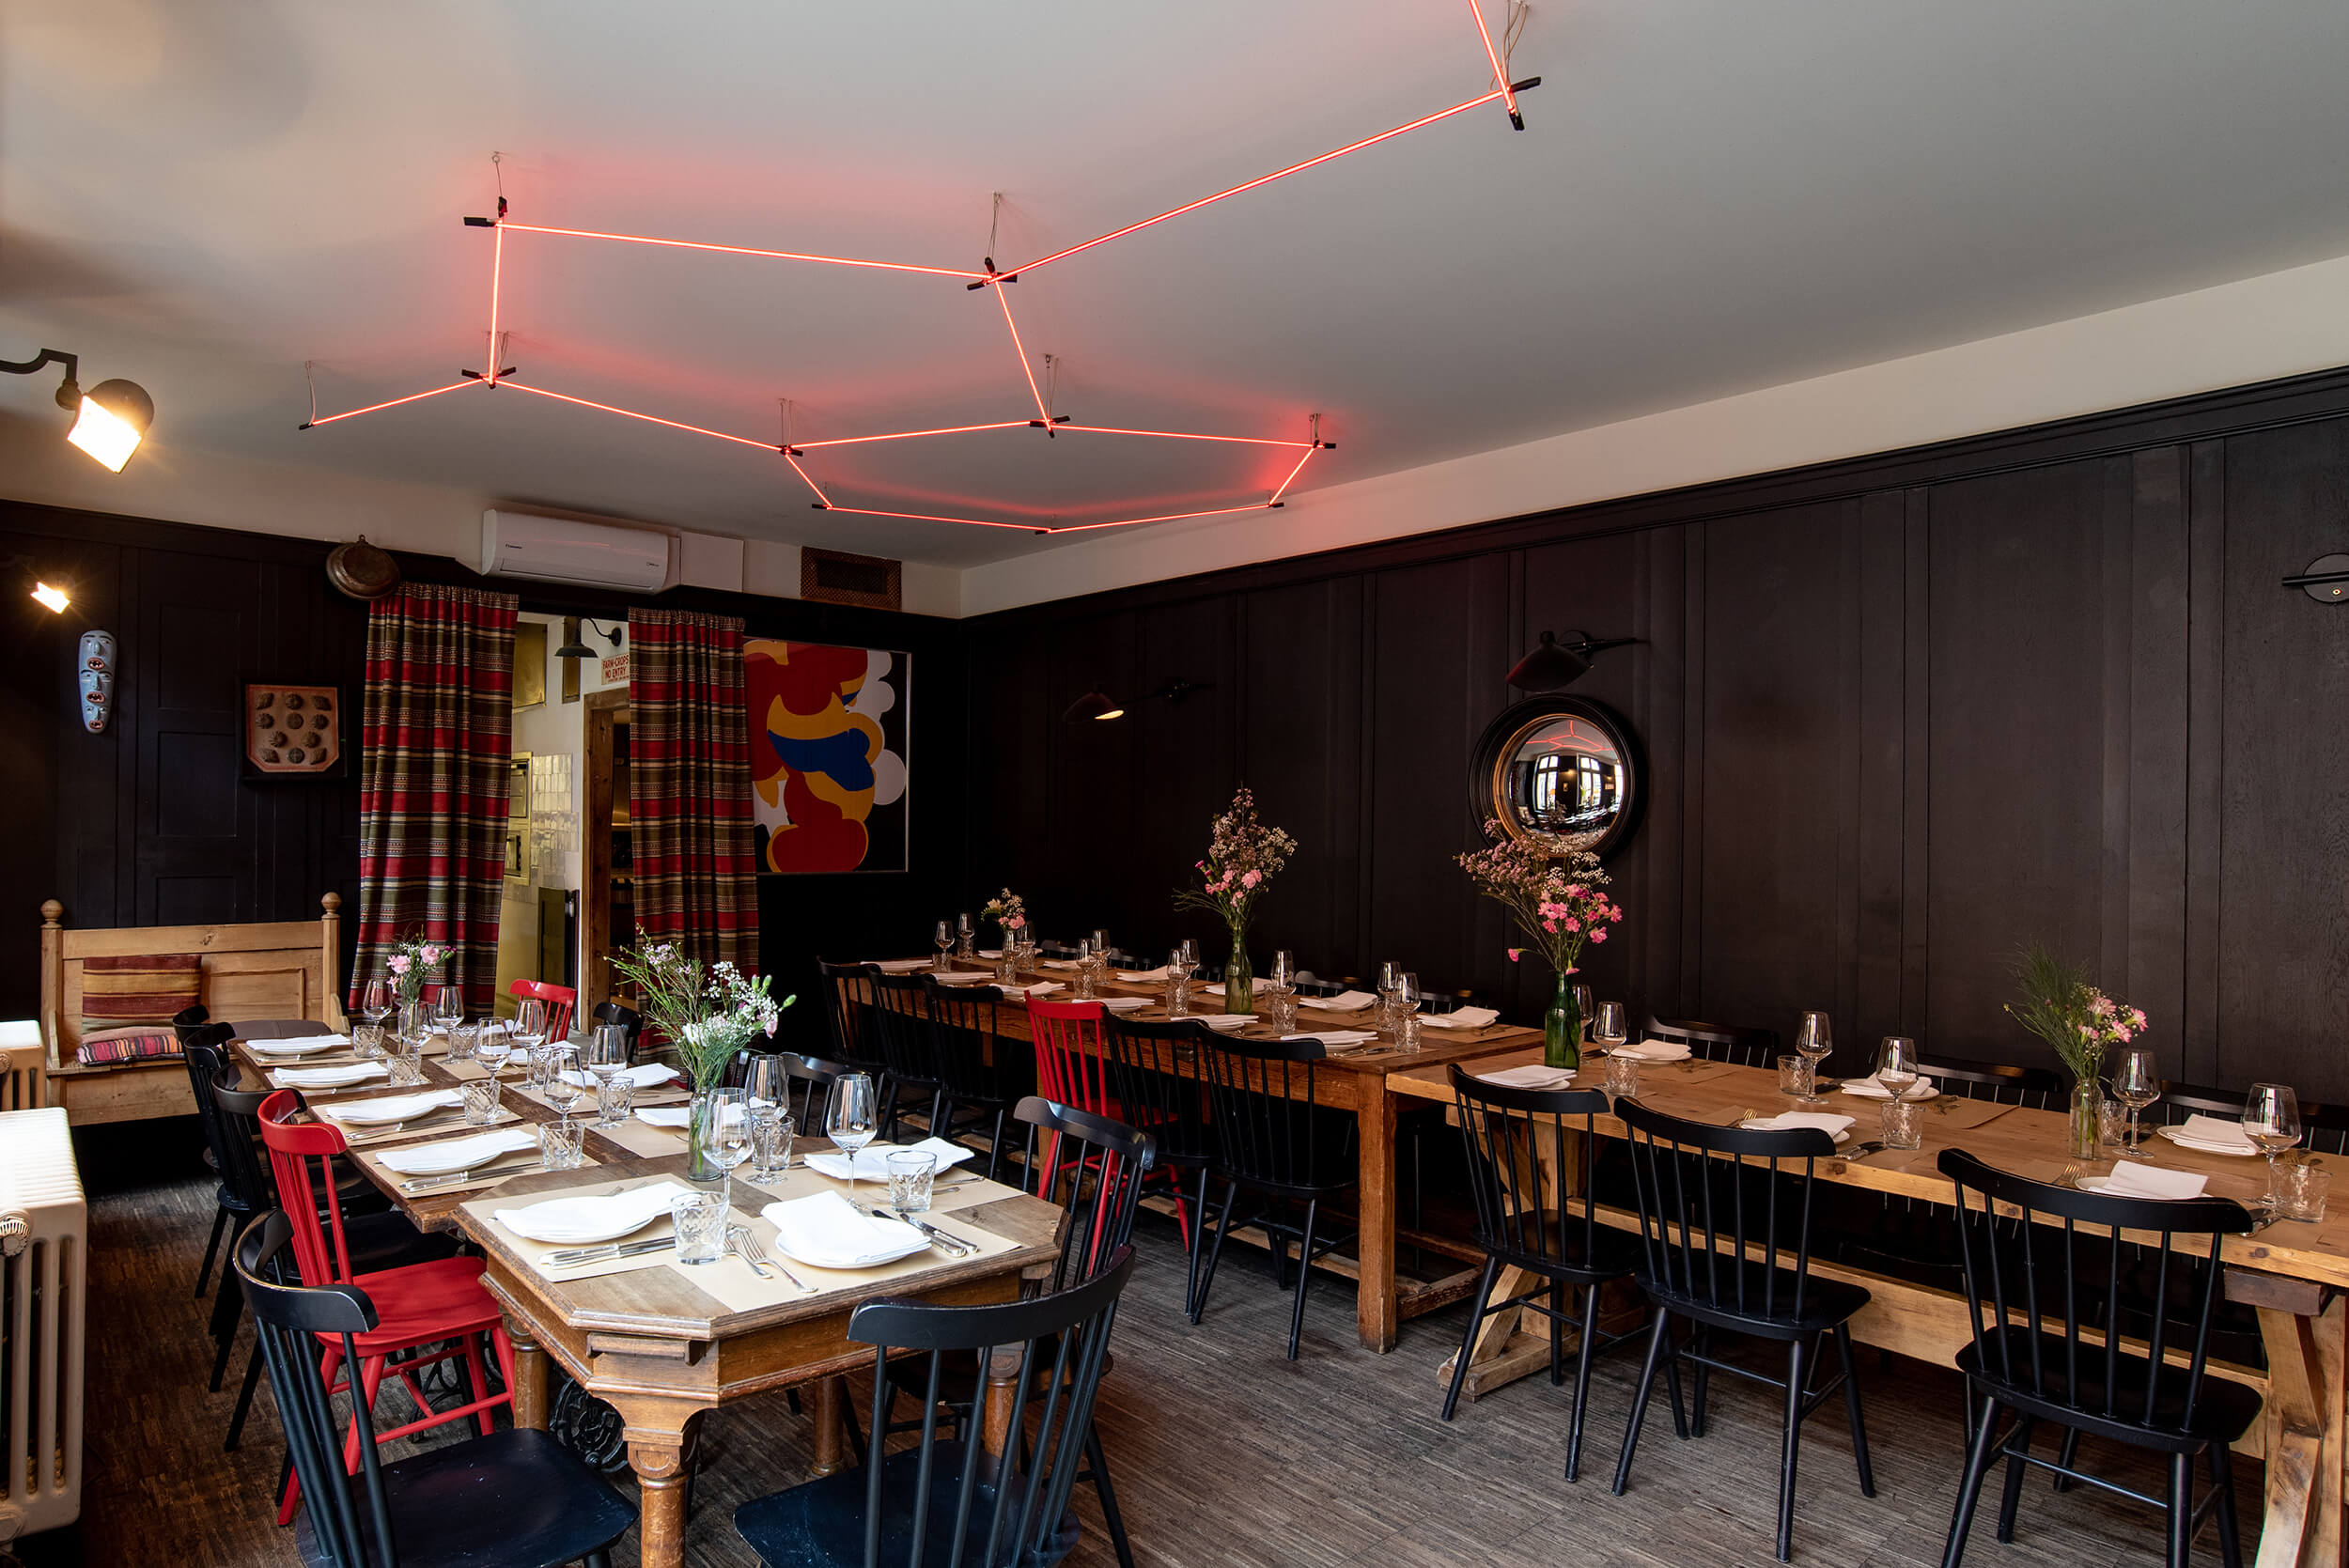 Stilvoll eingerichteter Panelraum mit langer Holztafel, gedeckt für 35 Gäste, rotem Neonlicht an der Decke und künstlerischem Wandgemälde.